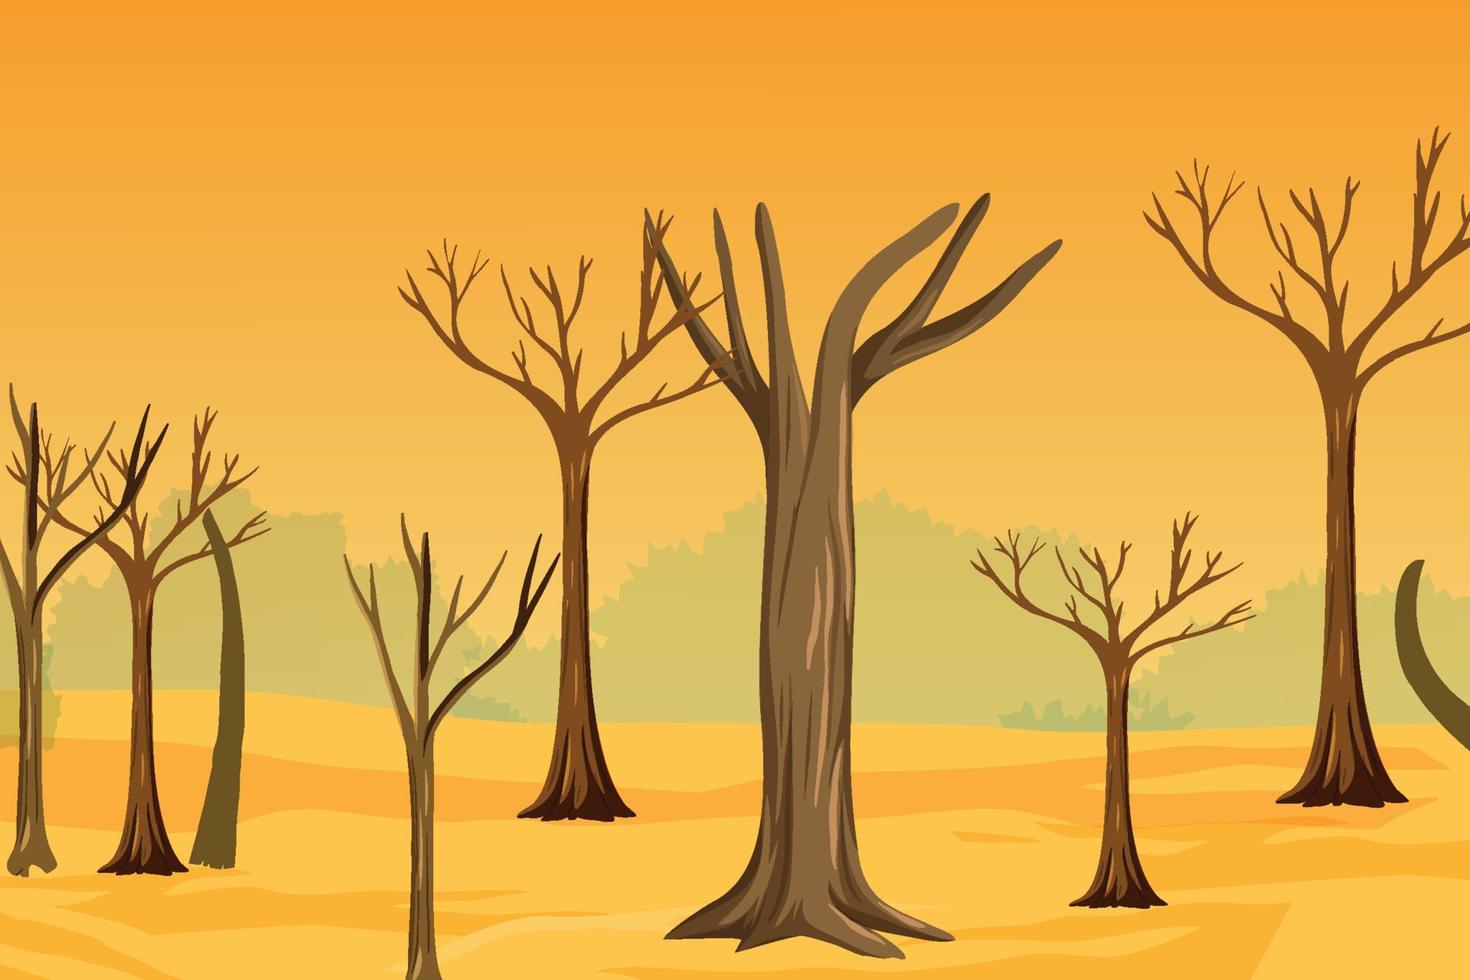 Trockenlandhintergrund mit Vektor der toten Baumstämme. schnitt von bäumen und dürreproblemkonzept mit trockenen gelben landen. Der Dschungel verwandelte sich wegen des Treibhauseffekts und der globalen Erwärmung in eine Wüste.